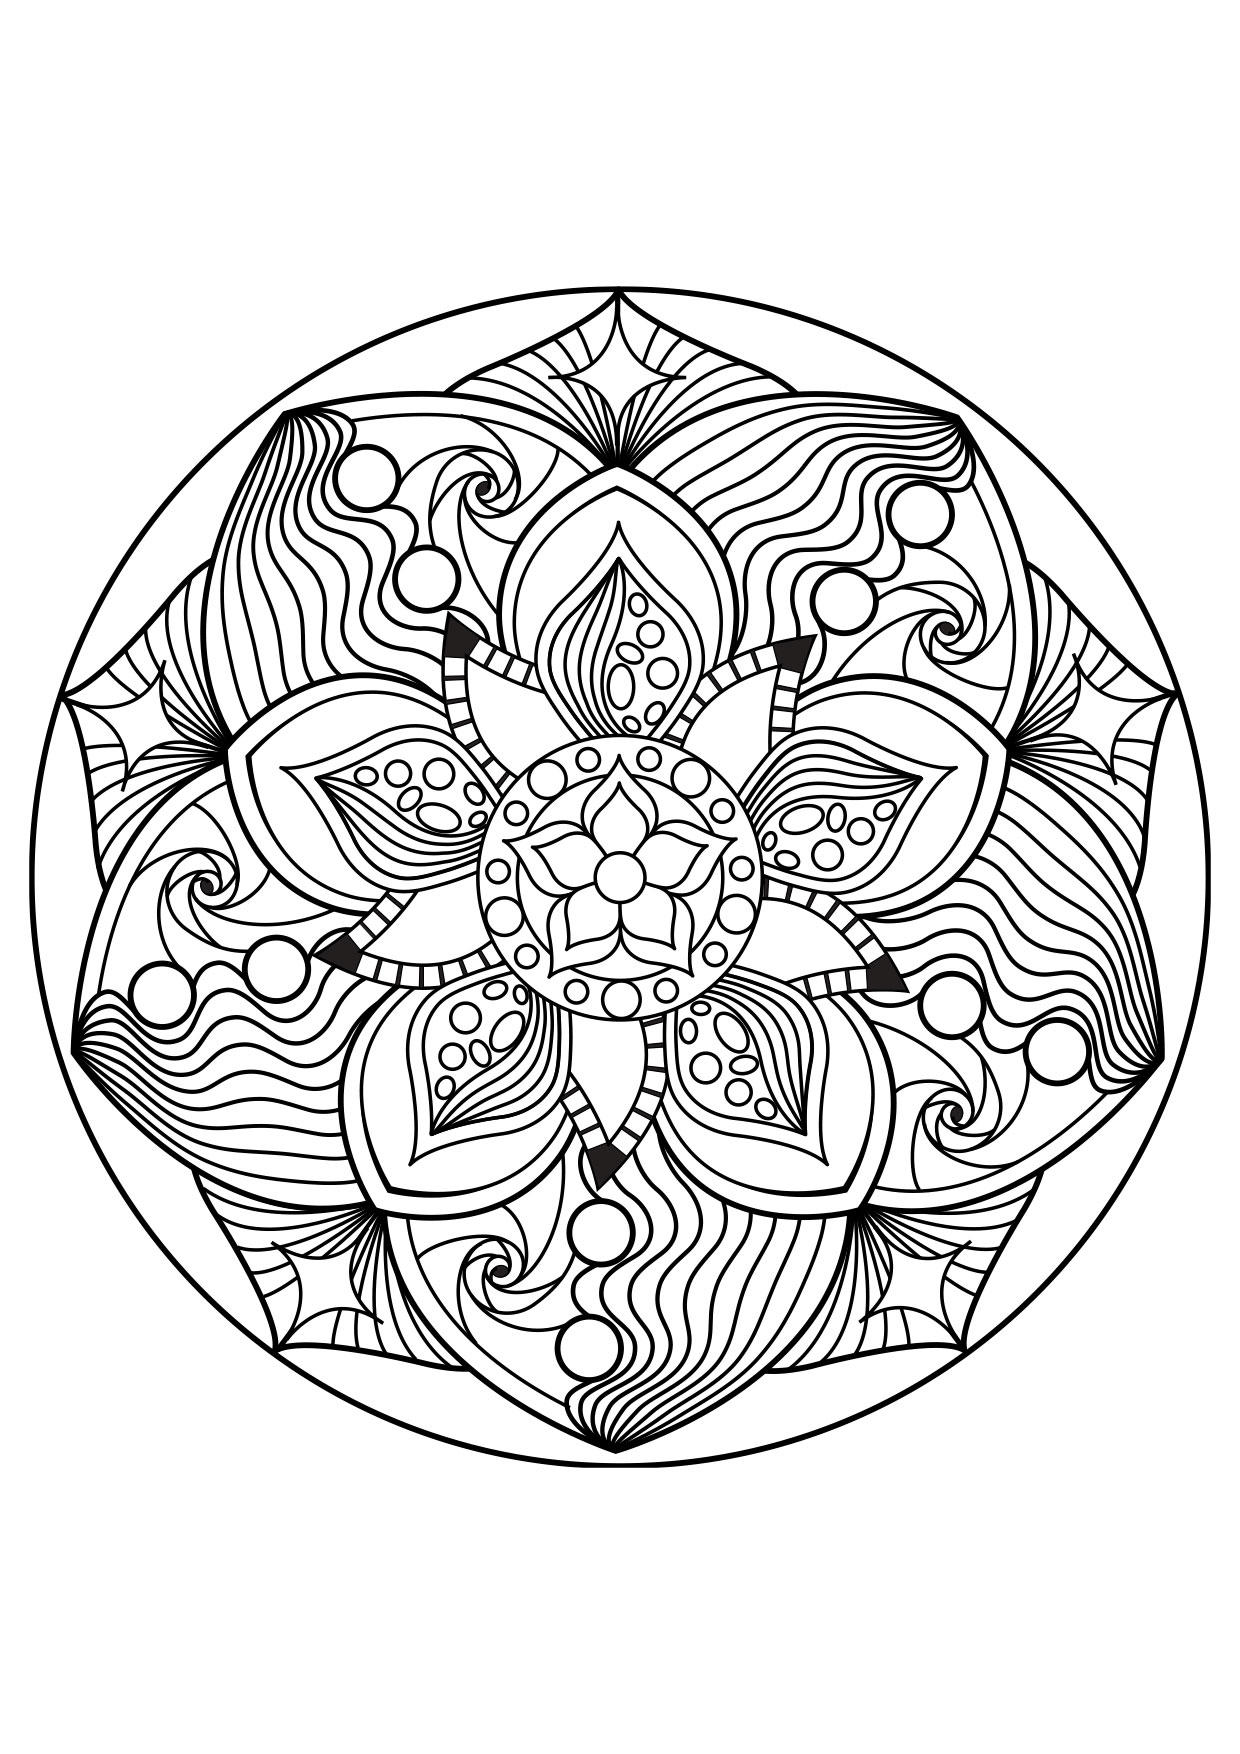 Dibujo para colorear Mandala - Dibujos Para Imprimir Gratis - Img 30879